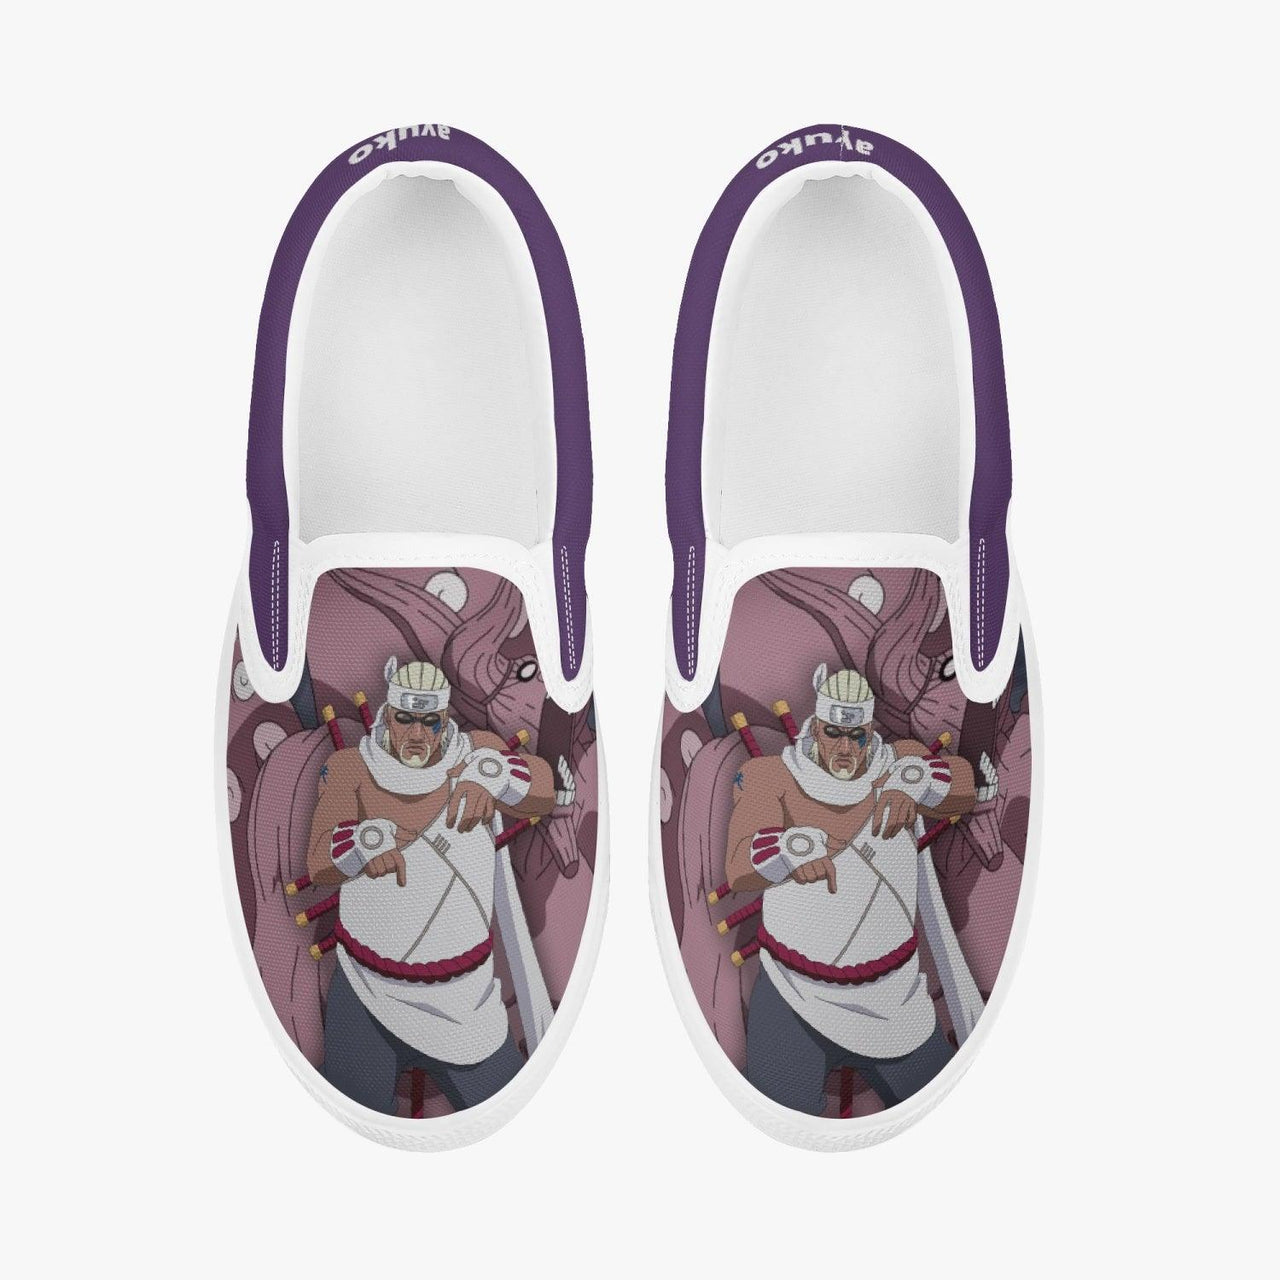 Naruto Shippuden Killer Bee Kids Slipons Anime Shoes _ Naruto _ Ayuko